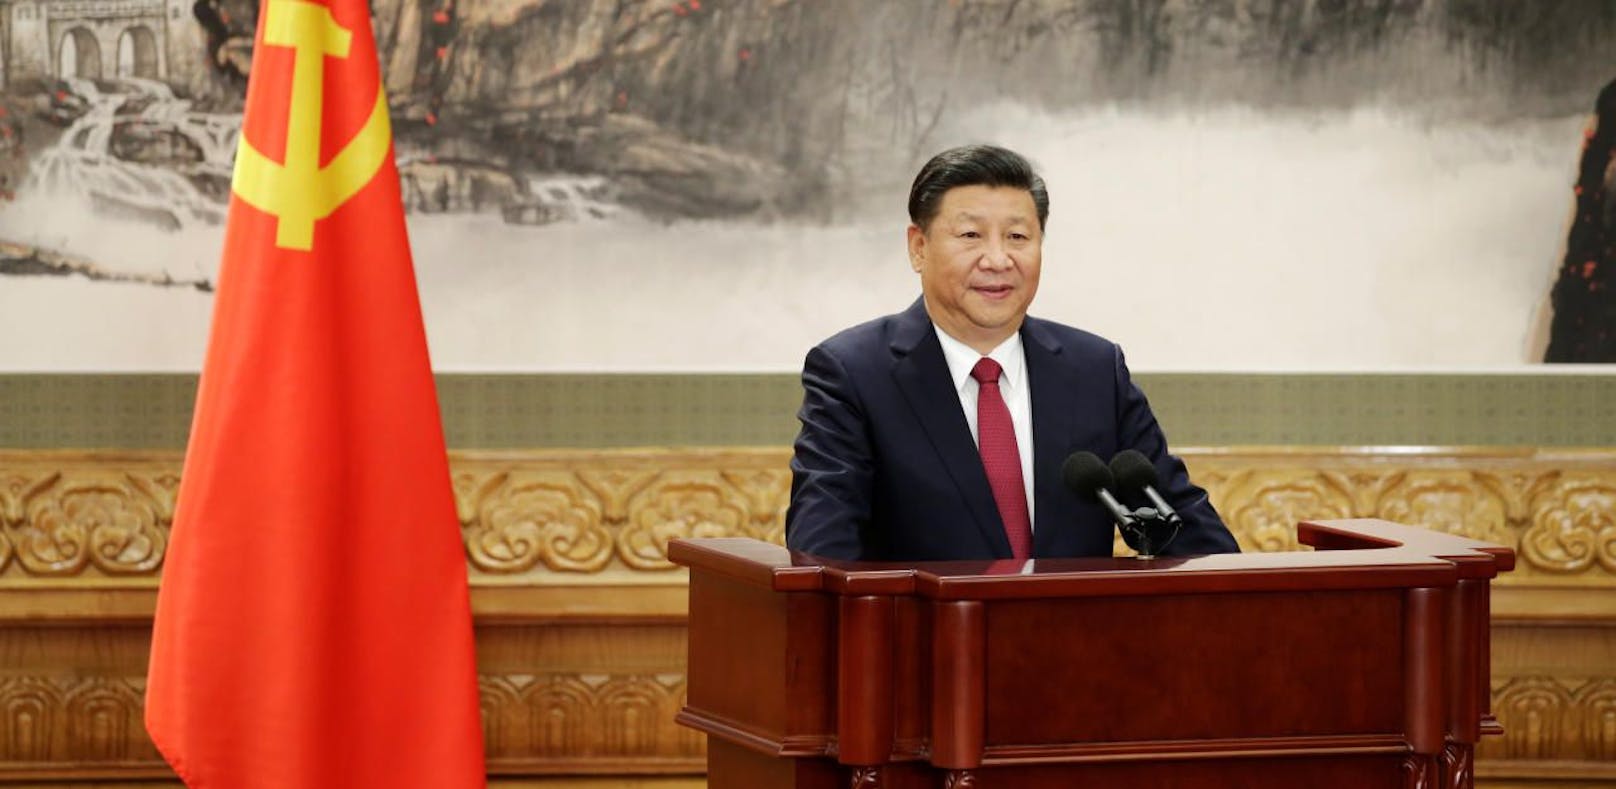 Chinas Staatschef Xi Jinping wurde für eine zweite Amtszeit bestätigt.